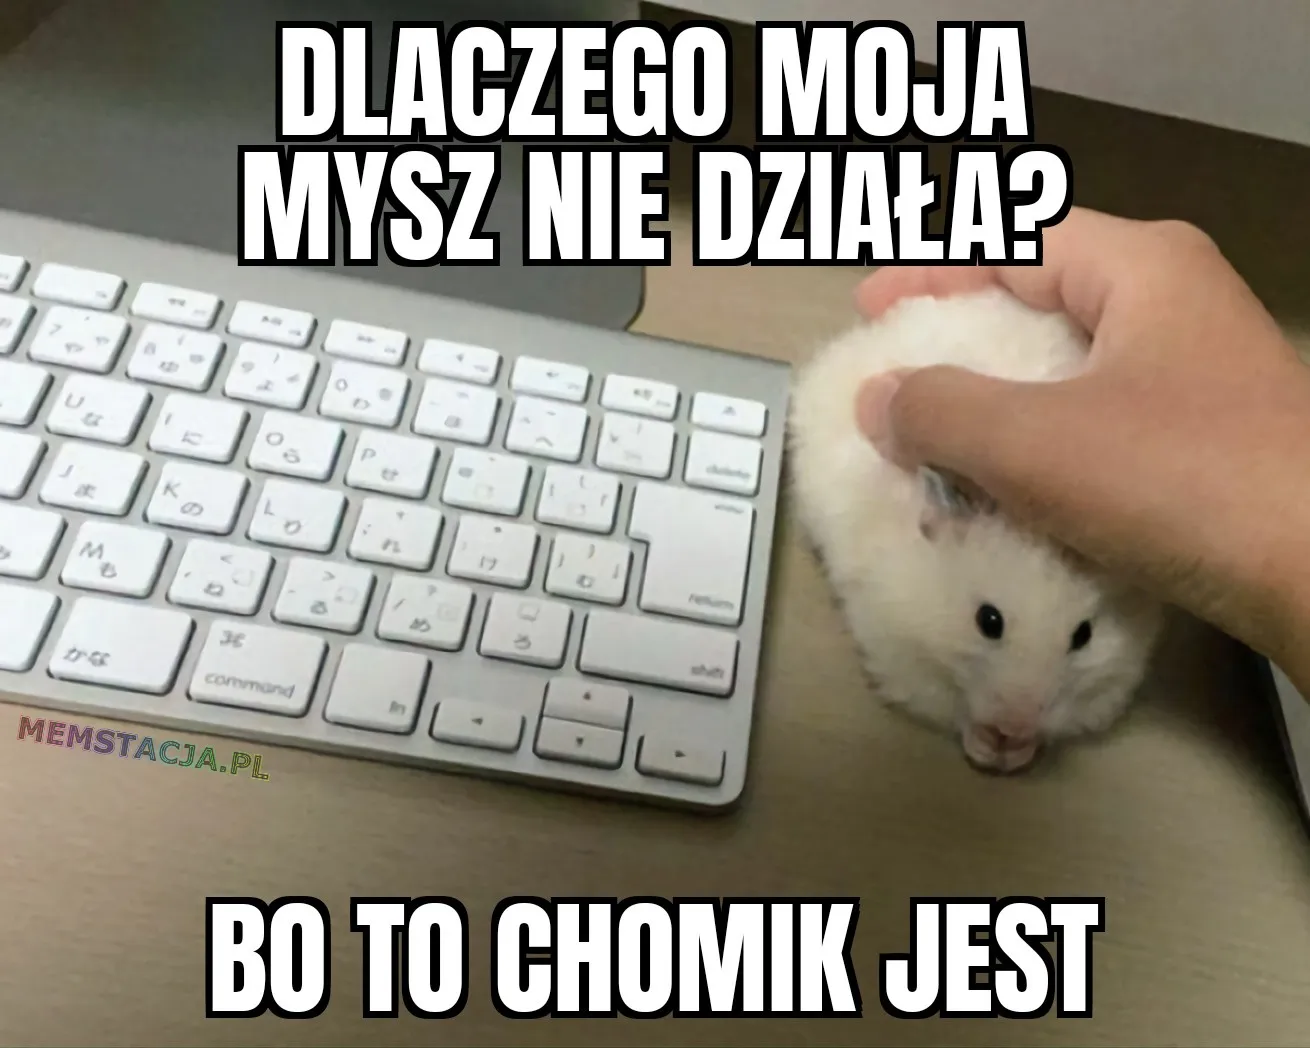 Zdjęcie przedstawiający klawiaturę i chomika trzymanego przez rękę: 'Dlaczego moja mysz nie działa? Bo to chomik jest'